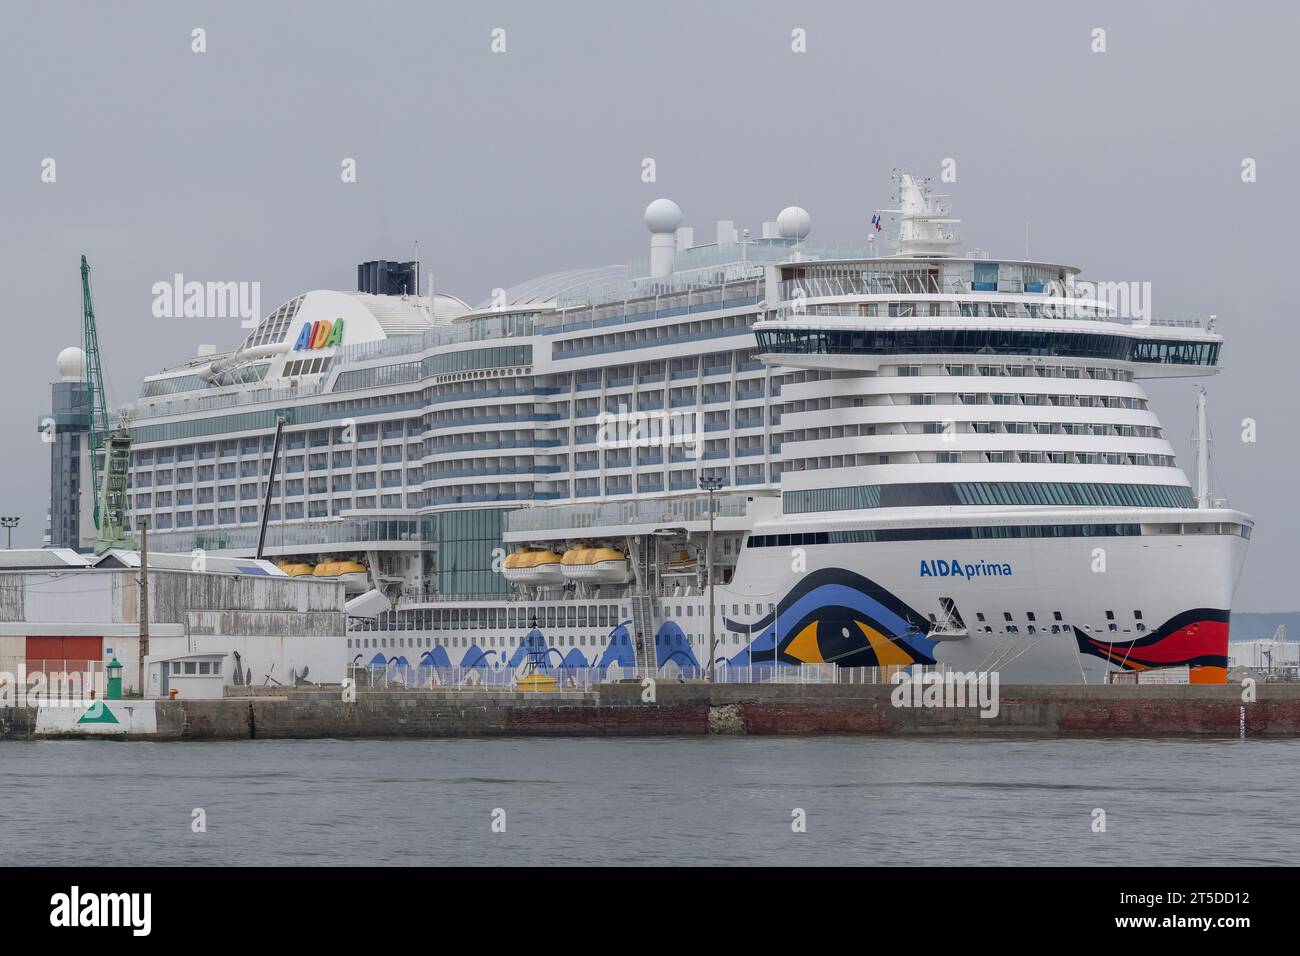 Le Havre, France - bateau de croisière AIDAprima à côté au port du Havre. Banque D'Images